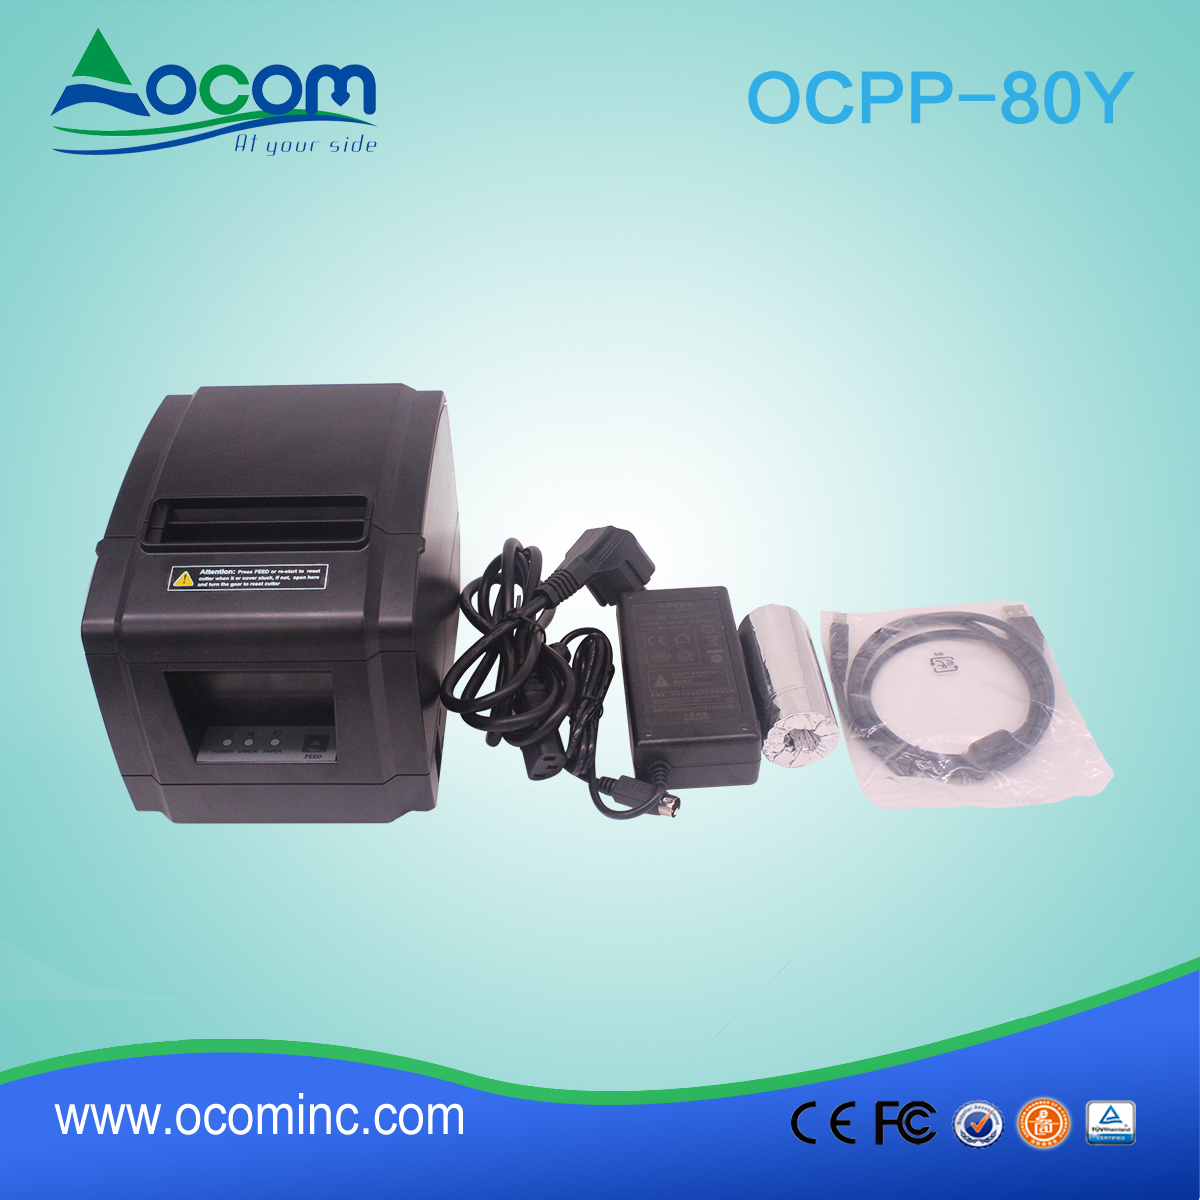 OCPP-80Y-China ha realizzato una stampante termica a 80mm a perdita ridotta